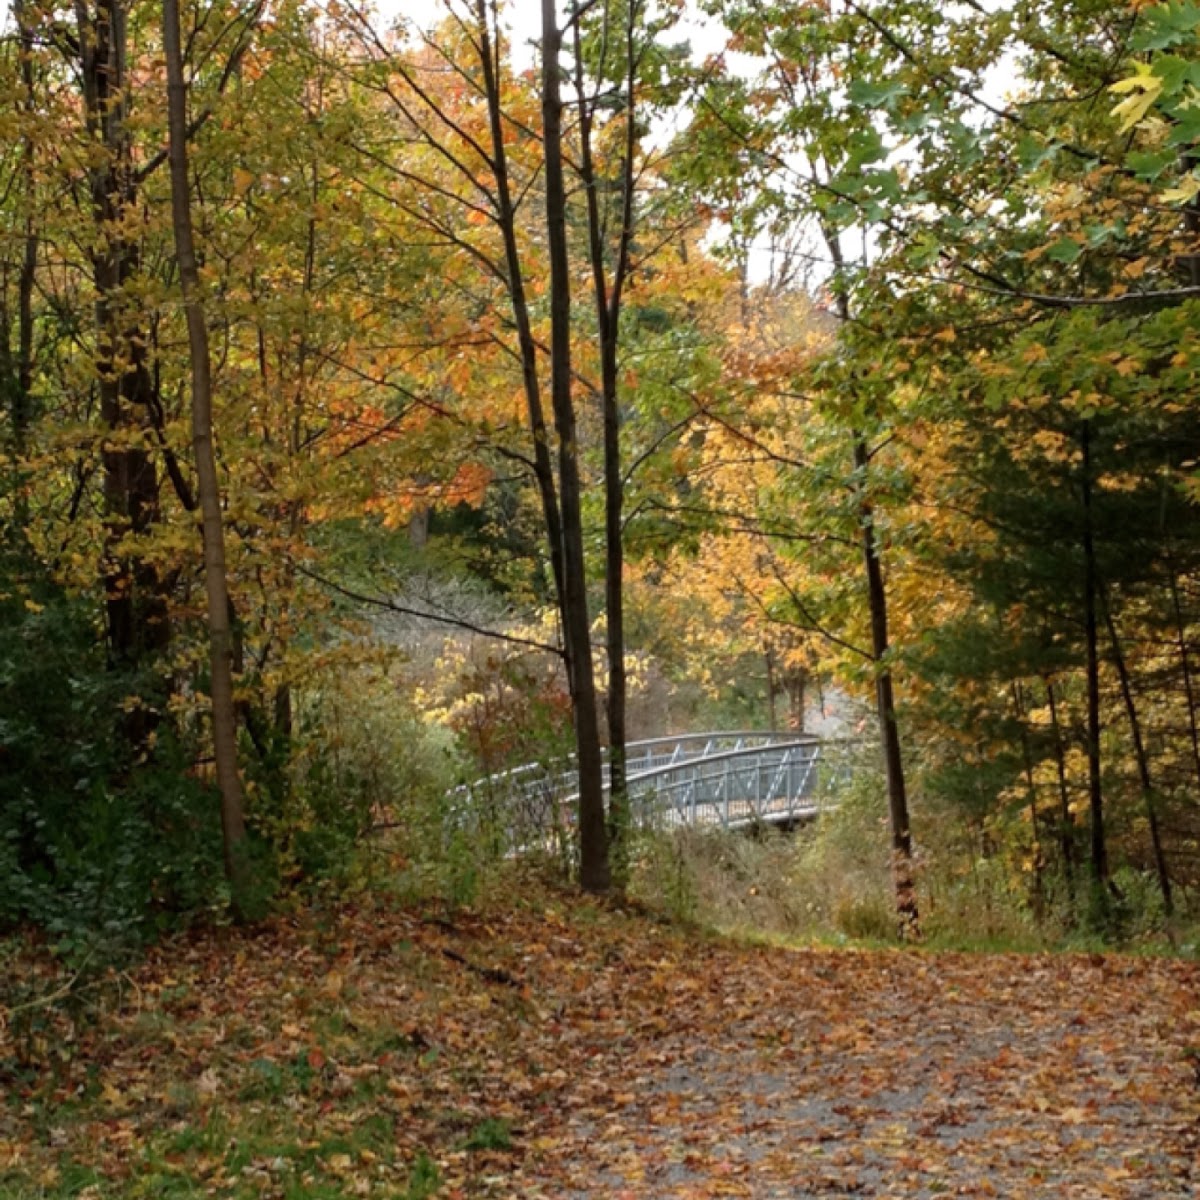 Fall scenery